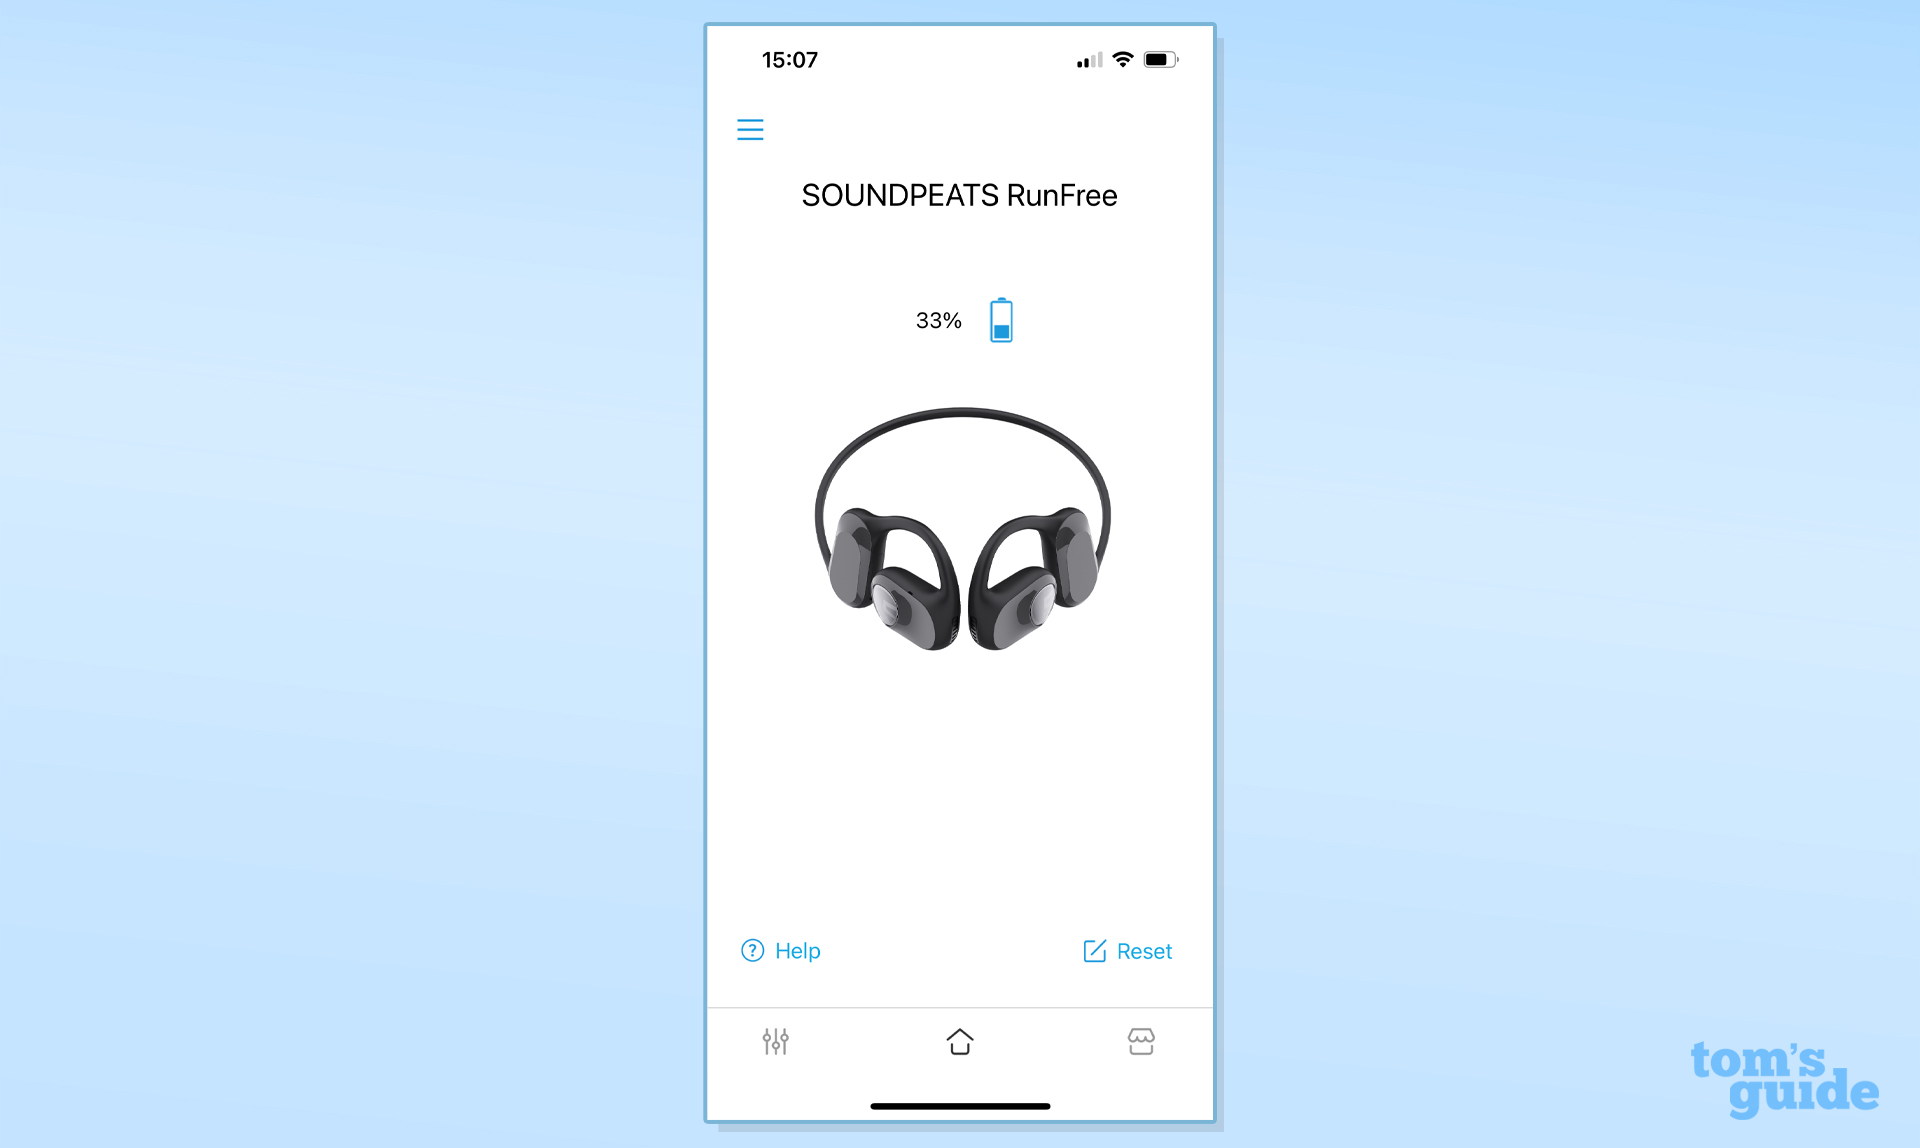 Soundpeats RunFree battery level shown in app